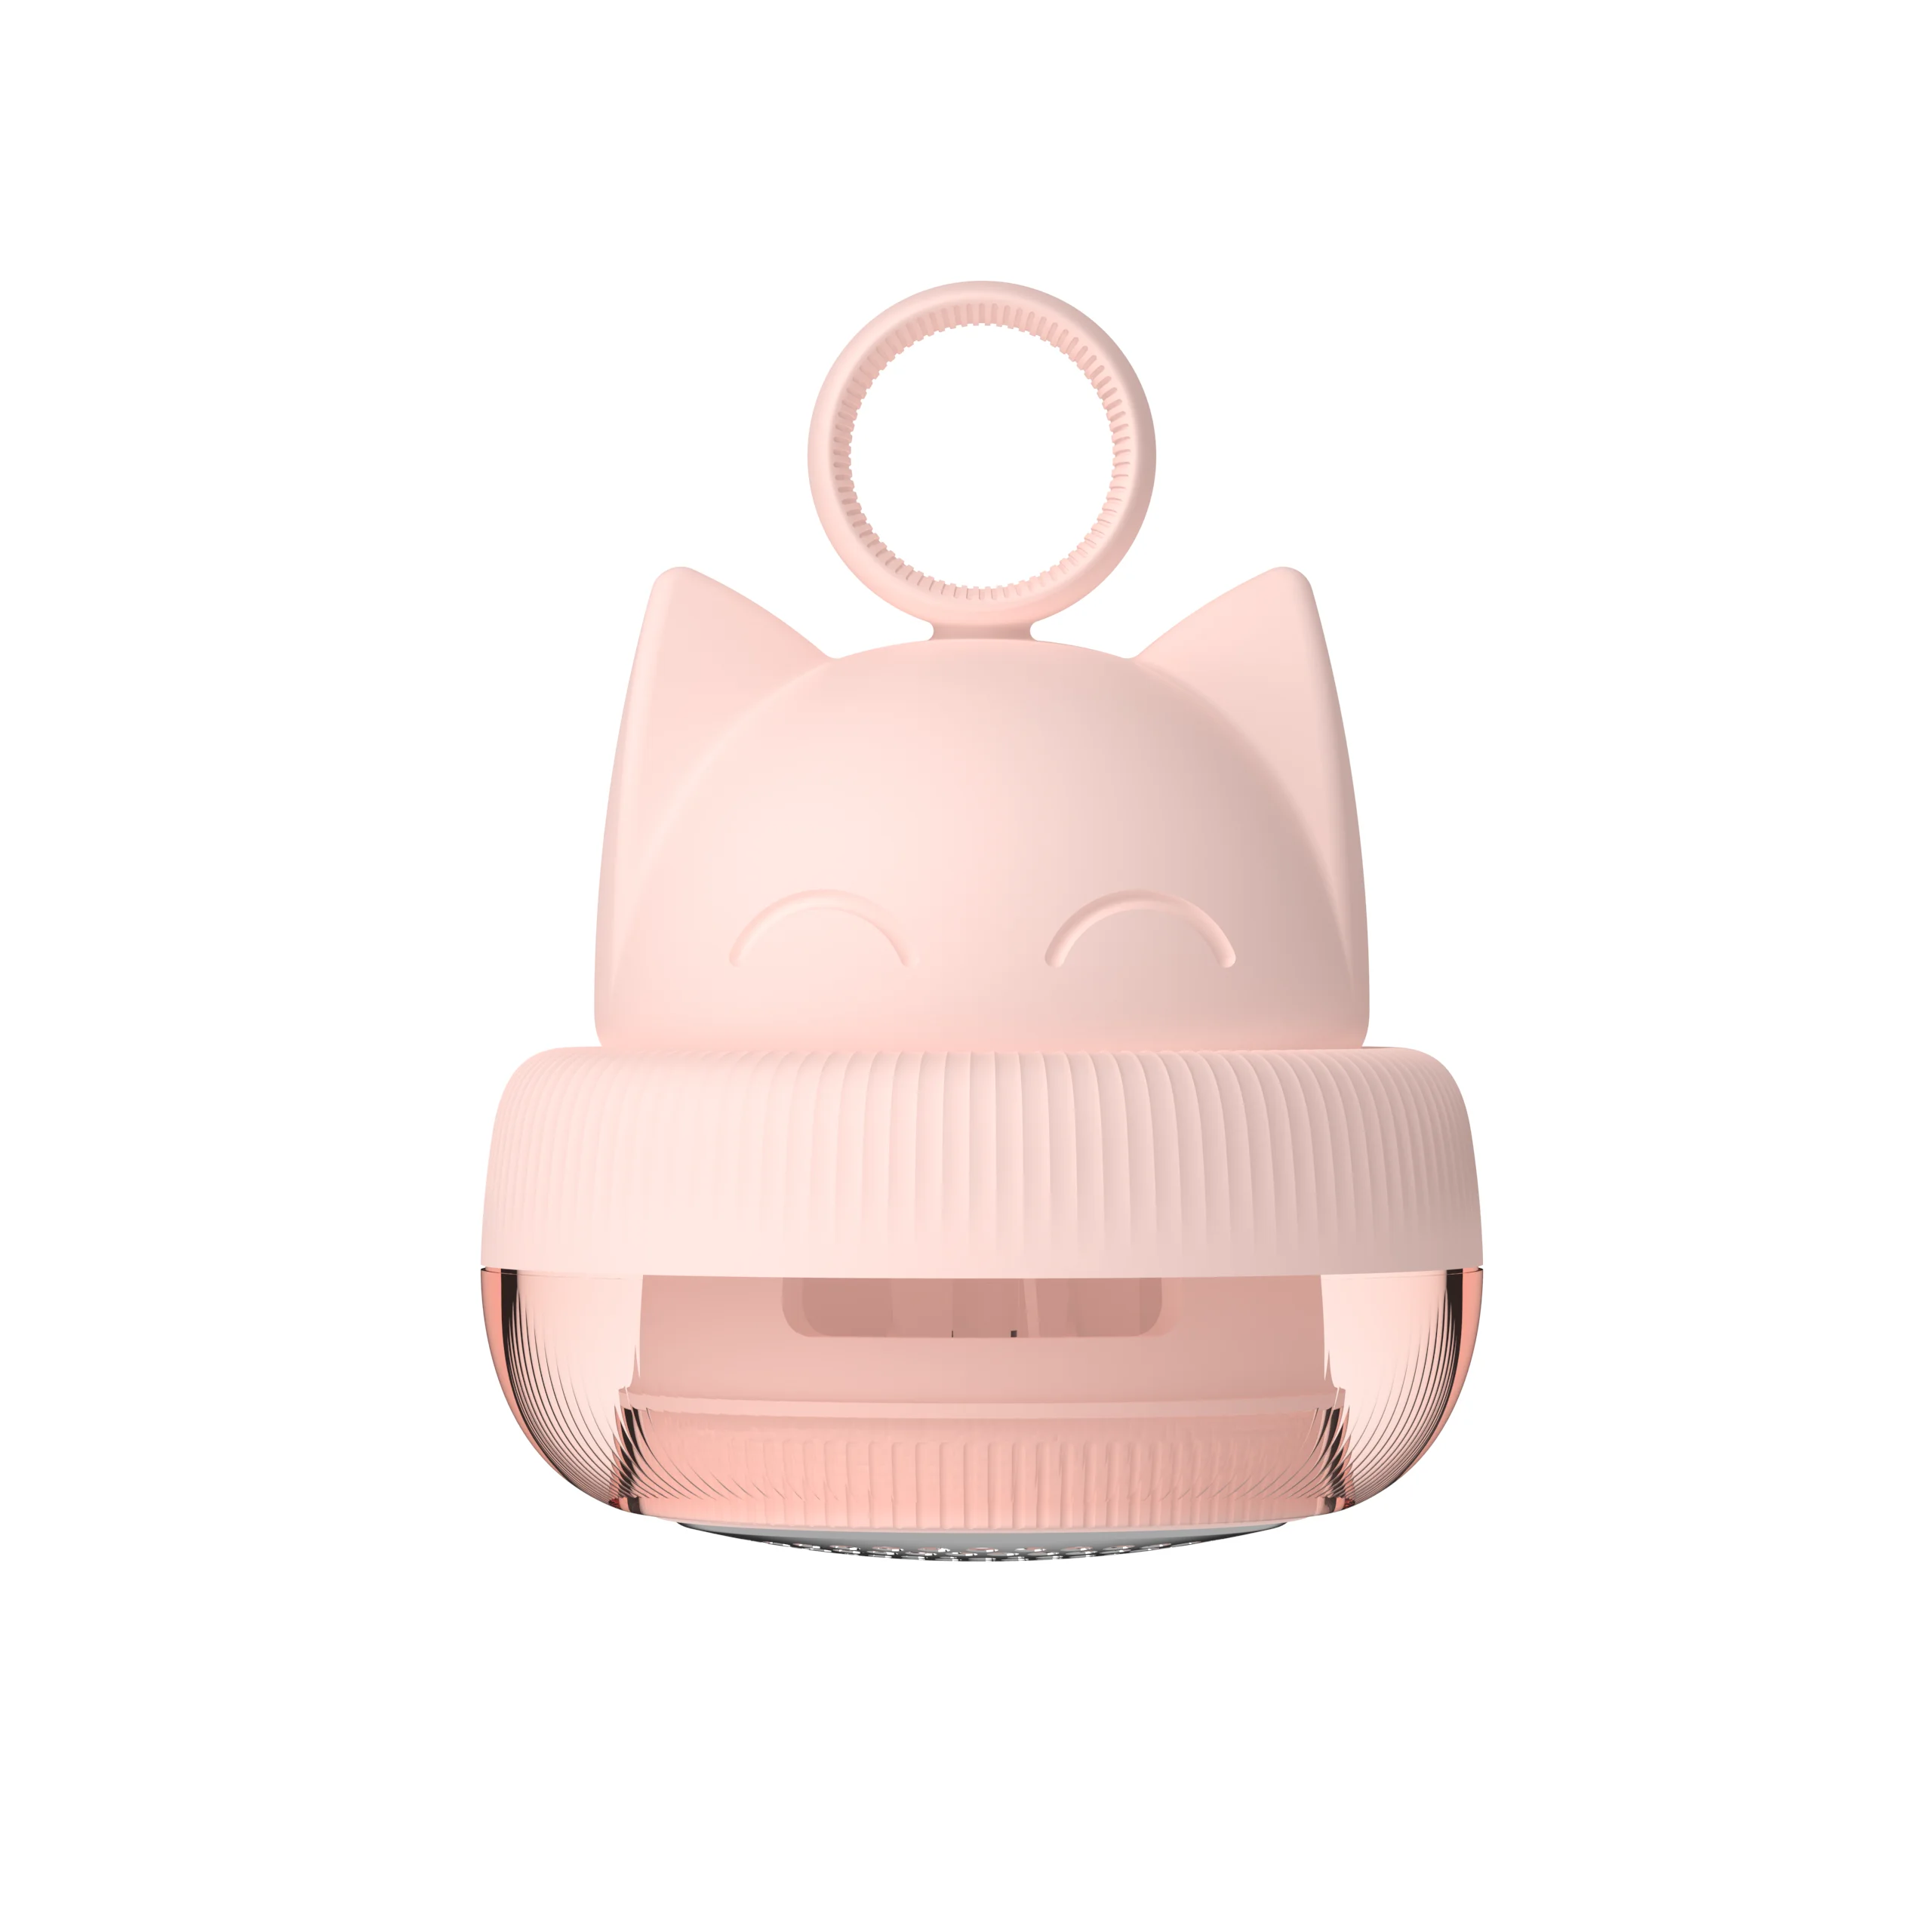 3 жизни электробритва одежда USB Перезаряжаемый ворс пульверизатор таблетки Бритва для свитера шторы Одежда Lint гранулы отрезная машина - Цвет: Pink